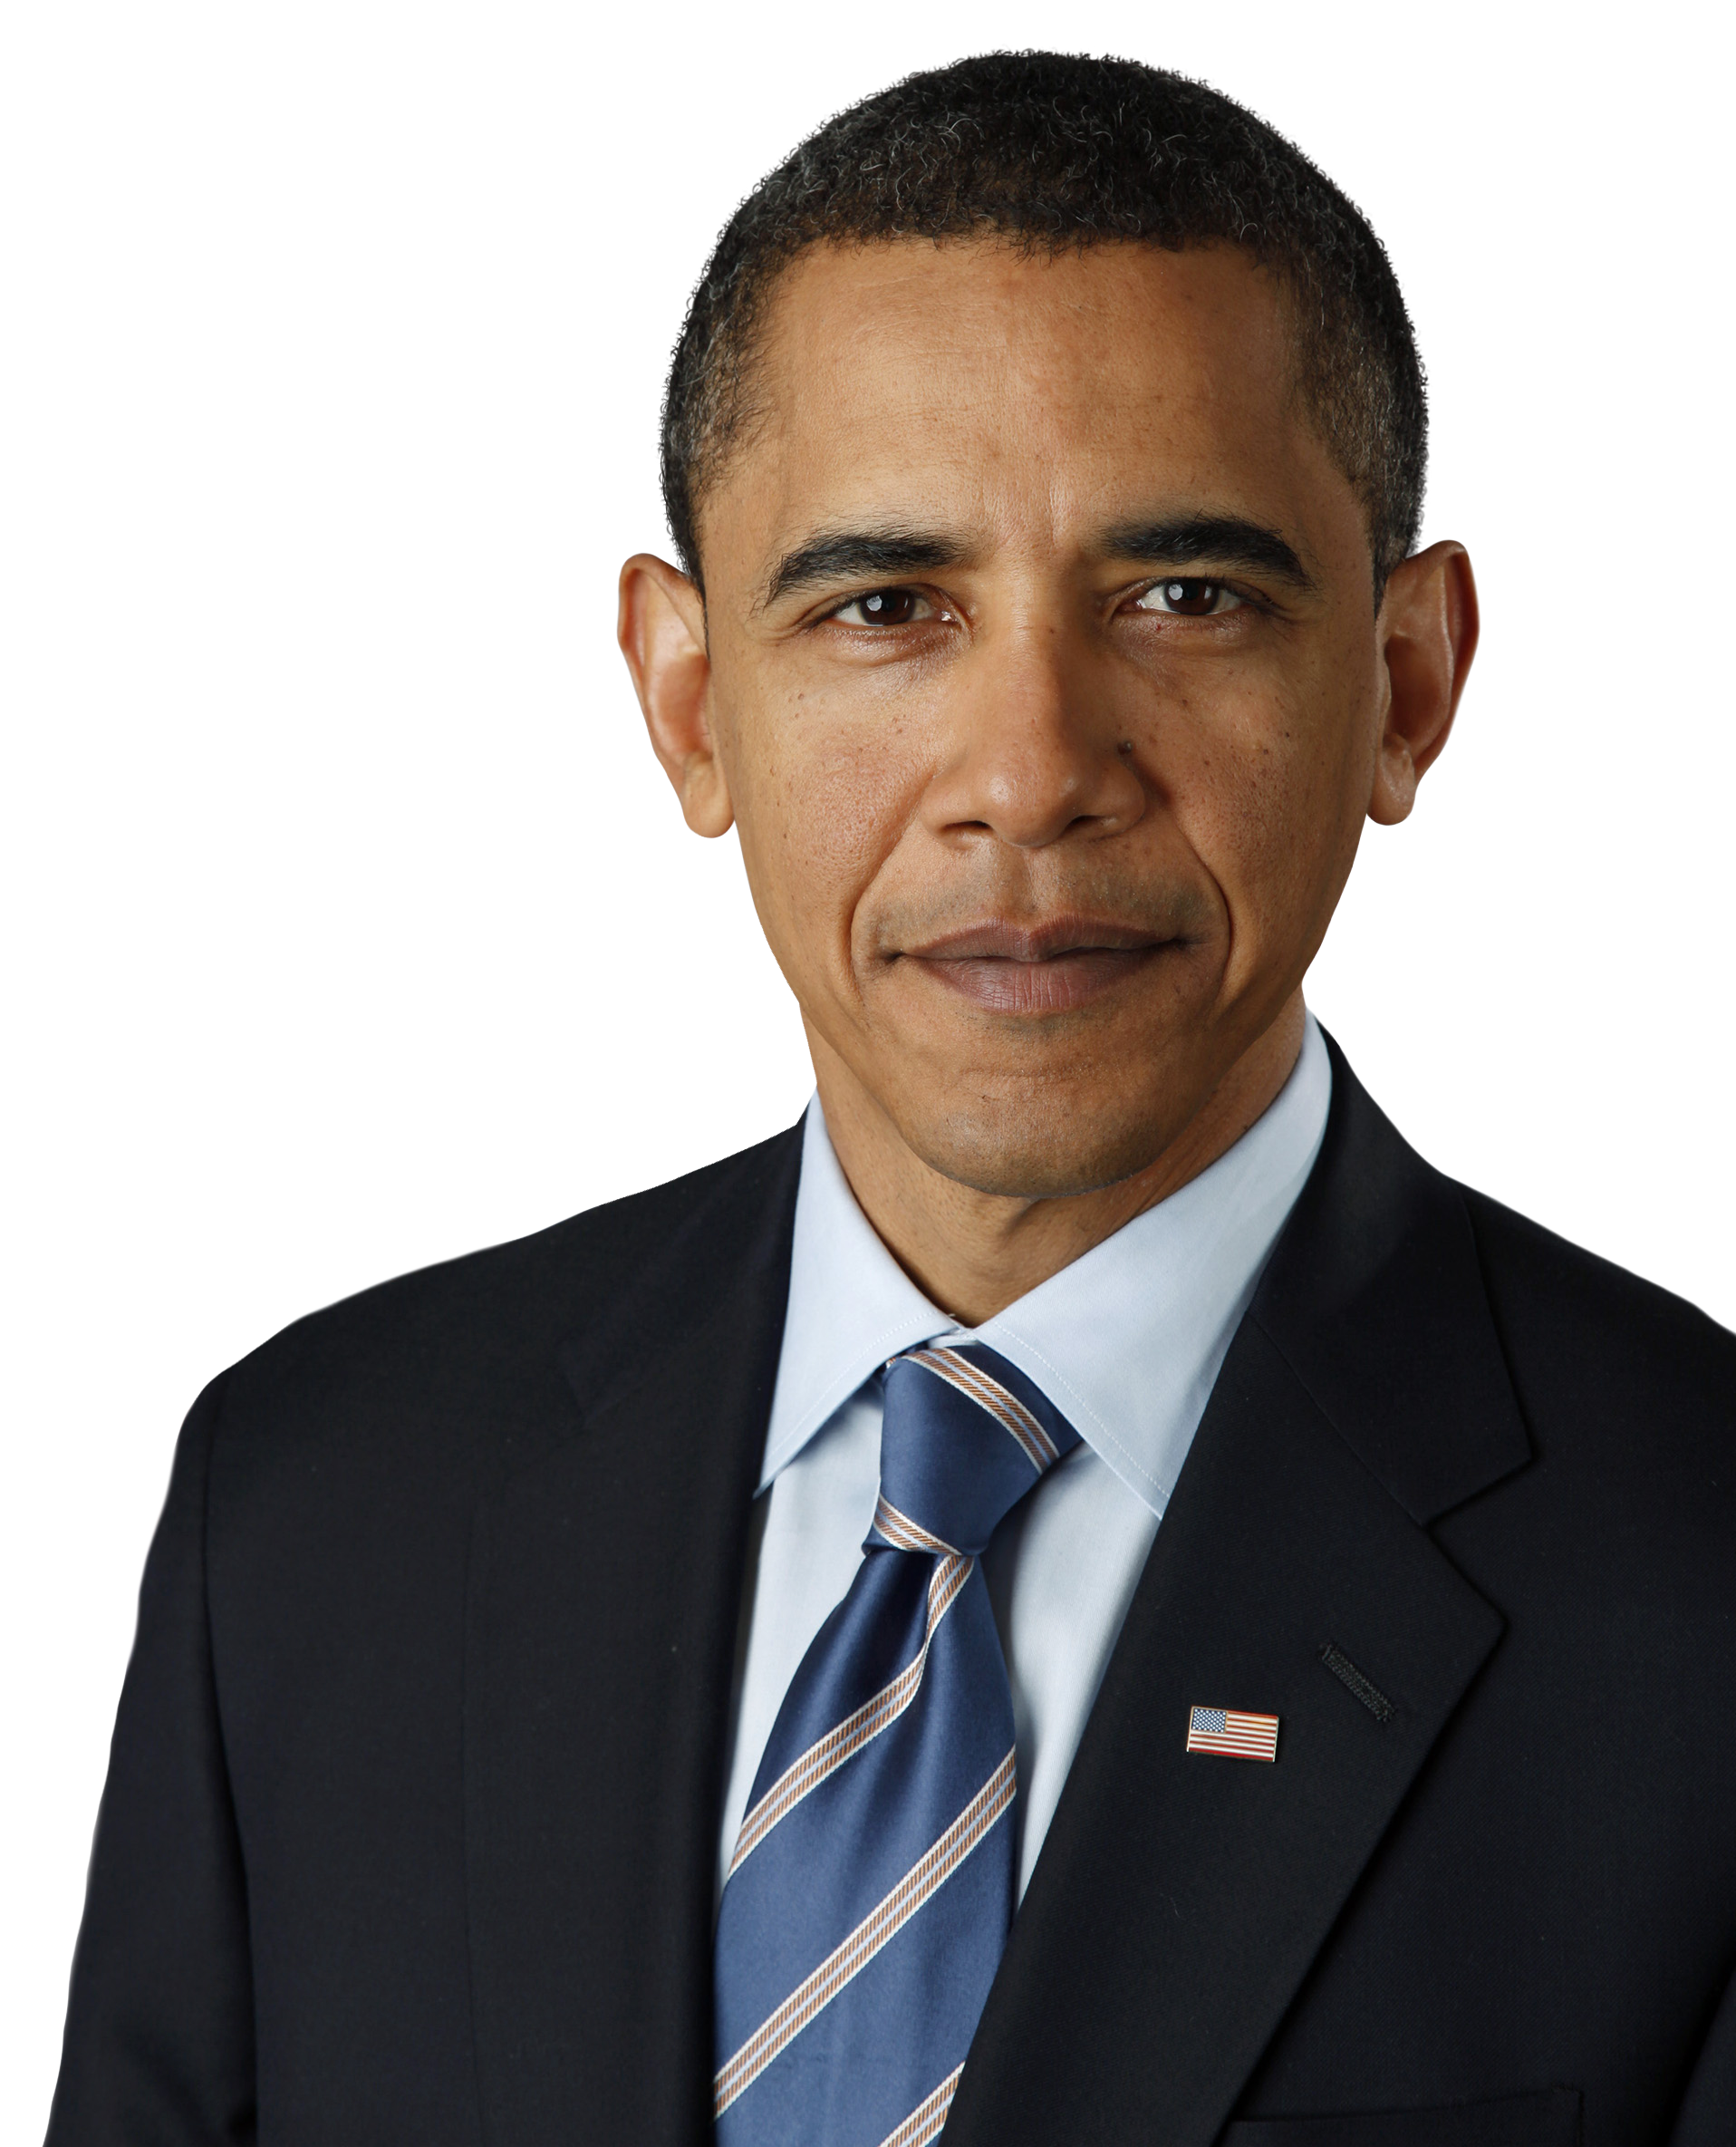 Barack Smiling Obama PNG Download Free PNG Image